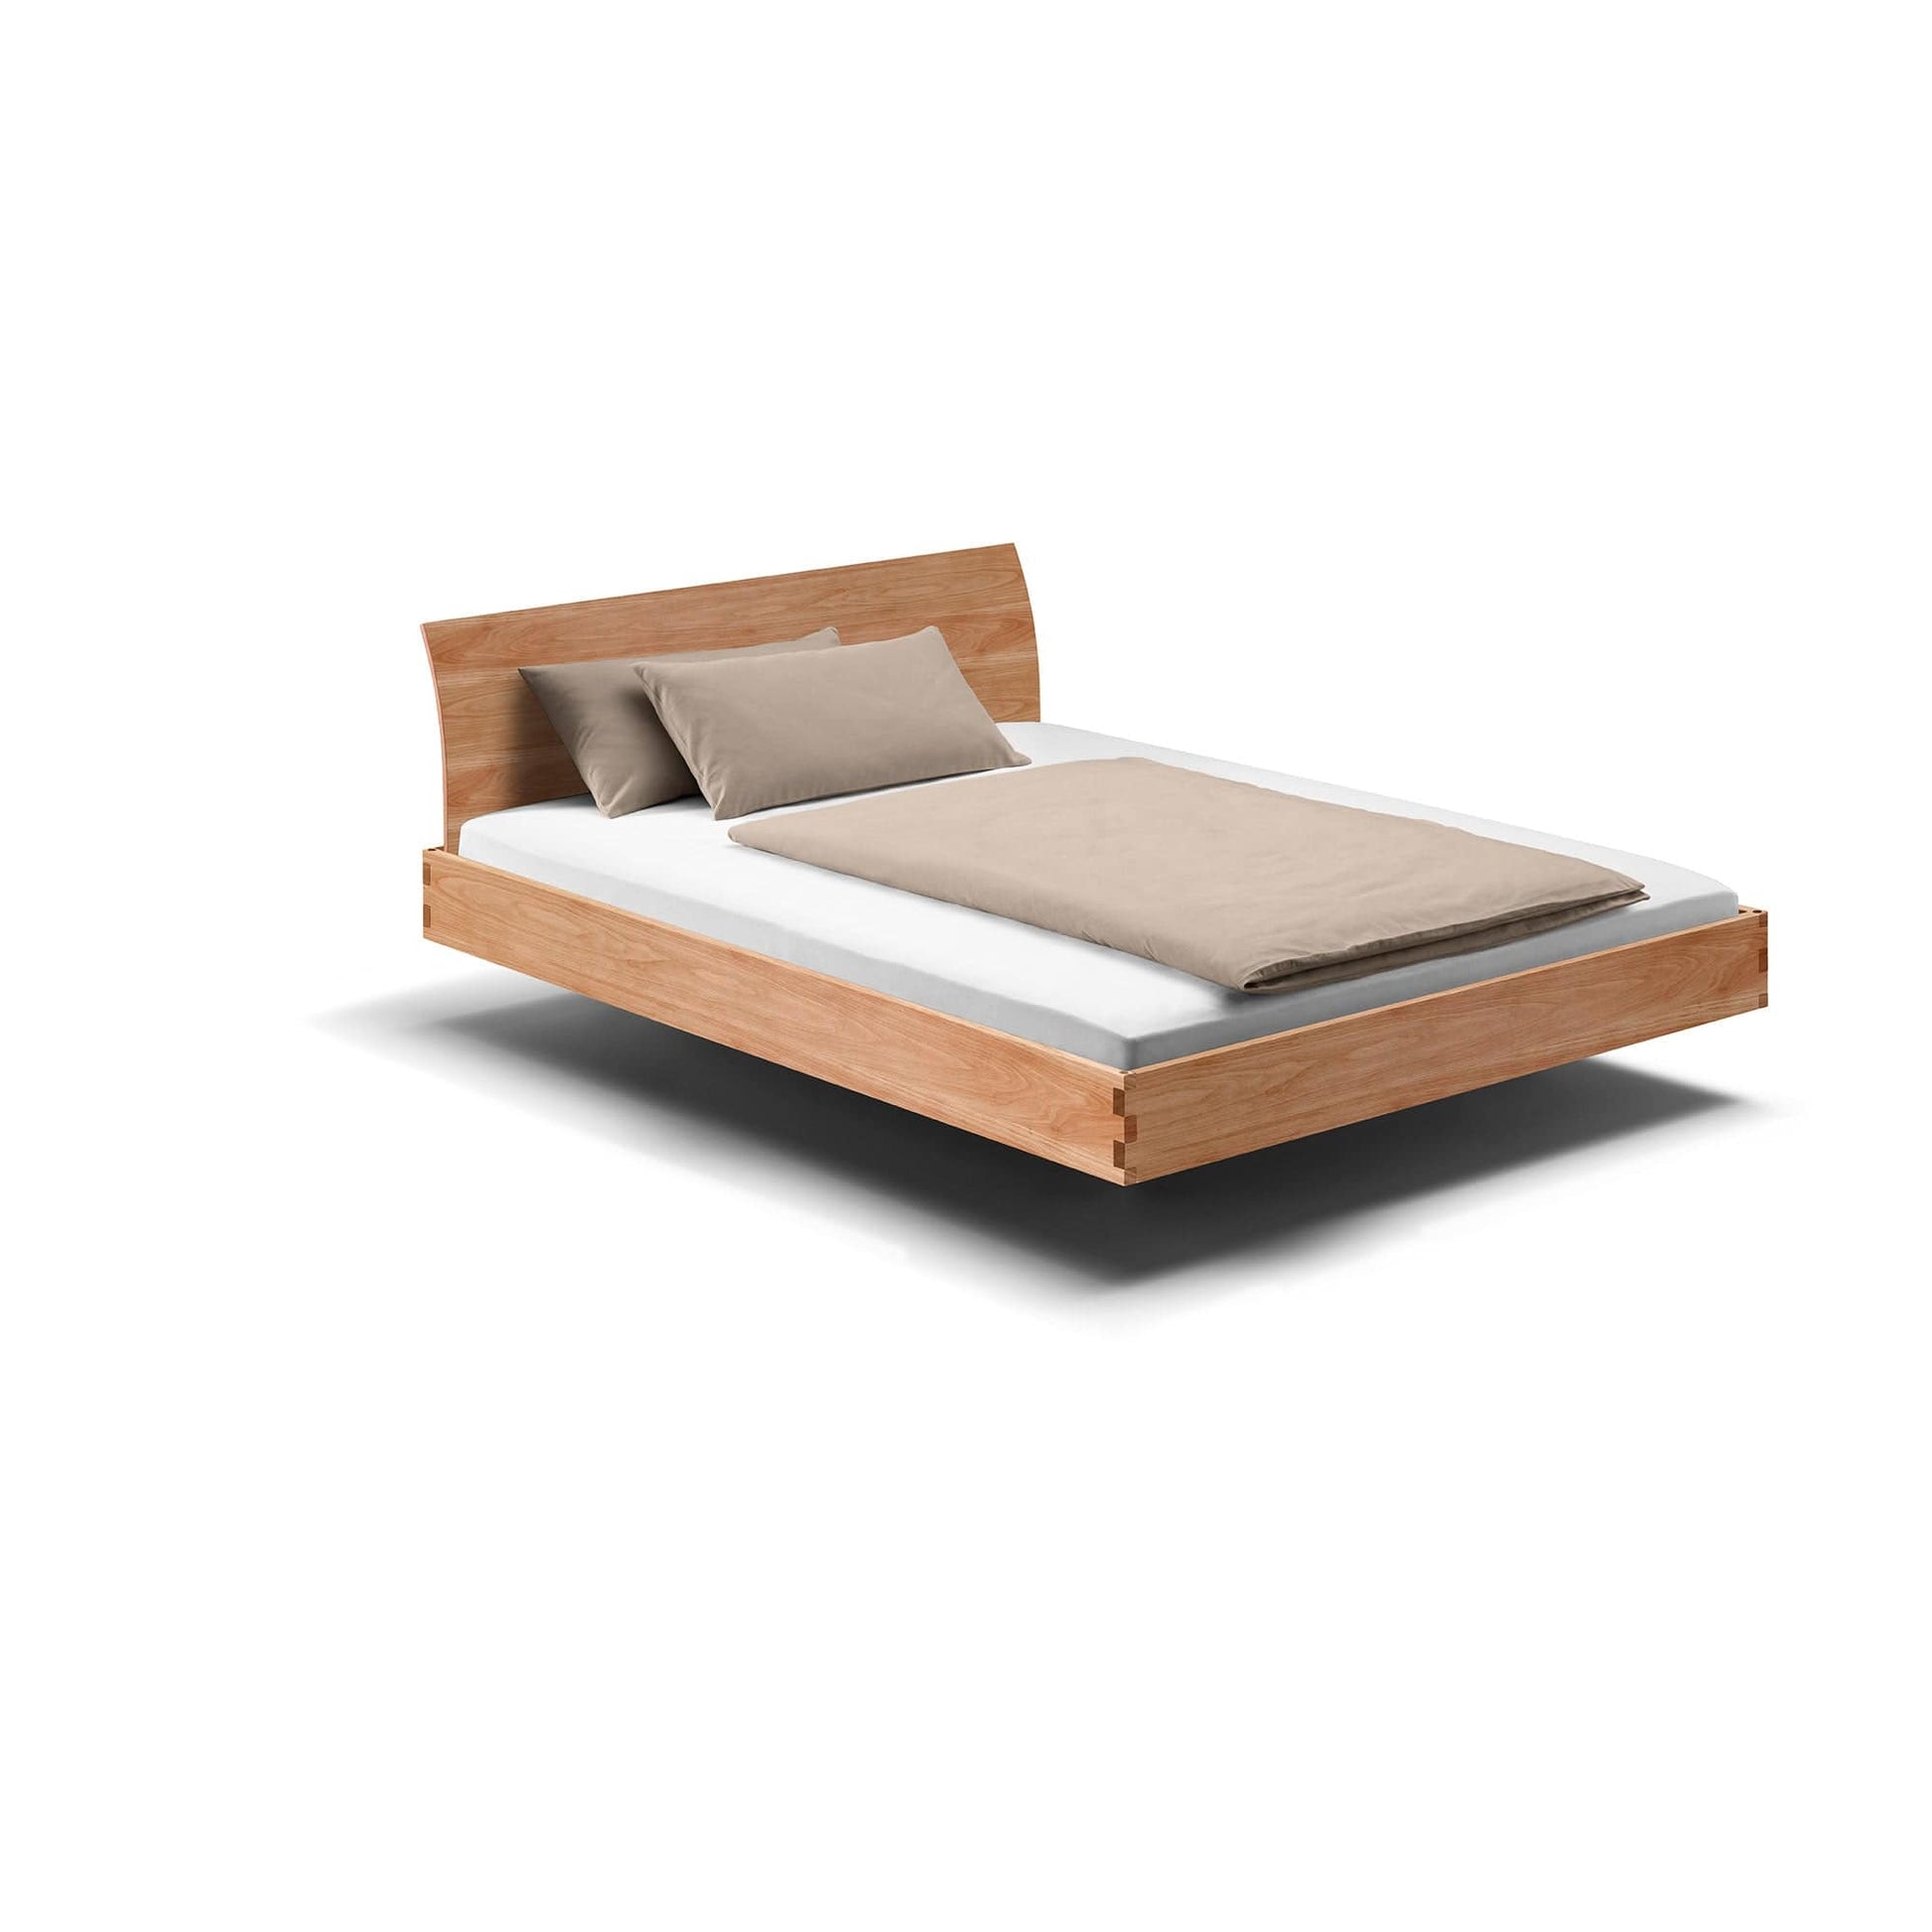 Holzmanufaktur Massivholzbett, ein hochwertiges schwebend leichtes Bett mit gebogener Rückenlehne.